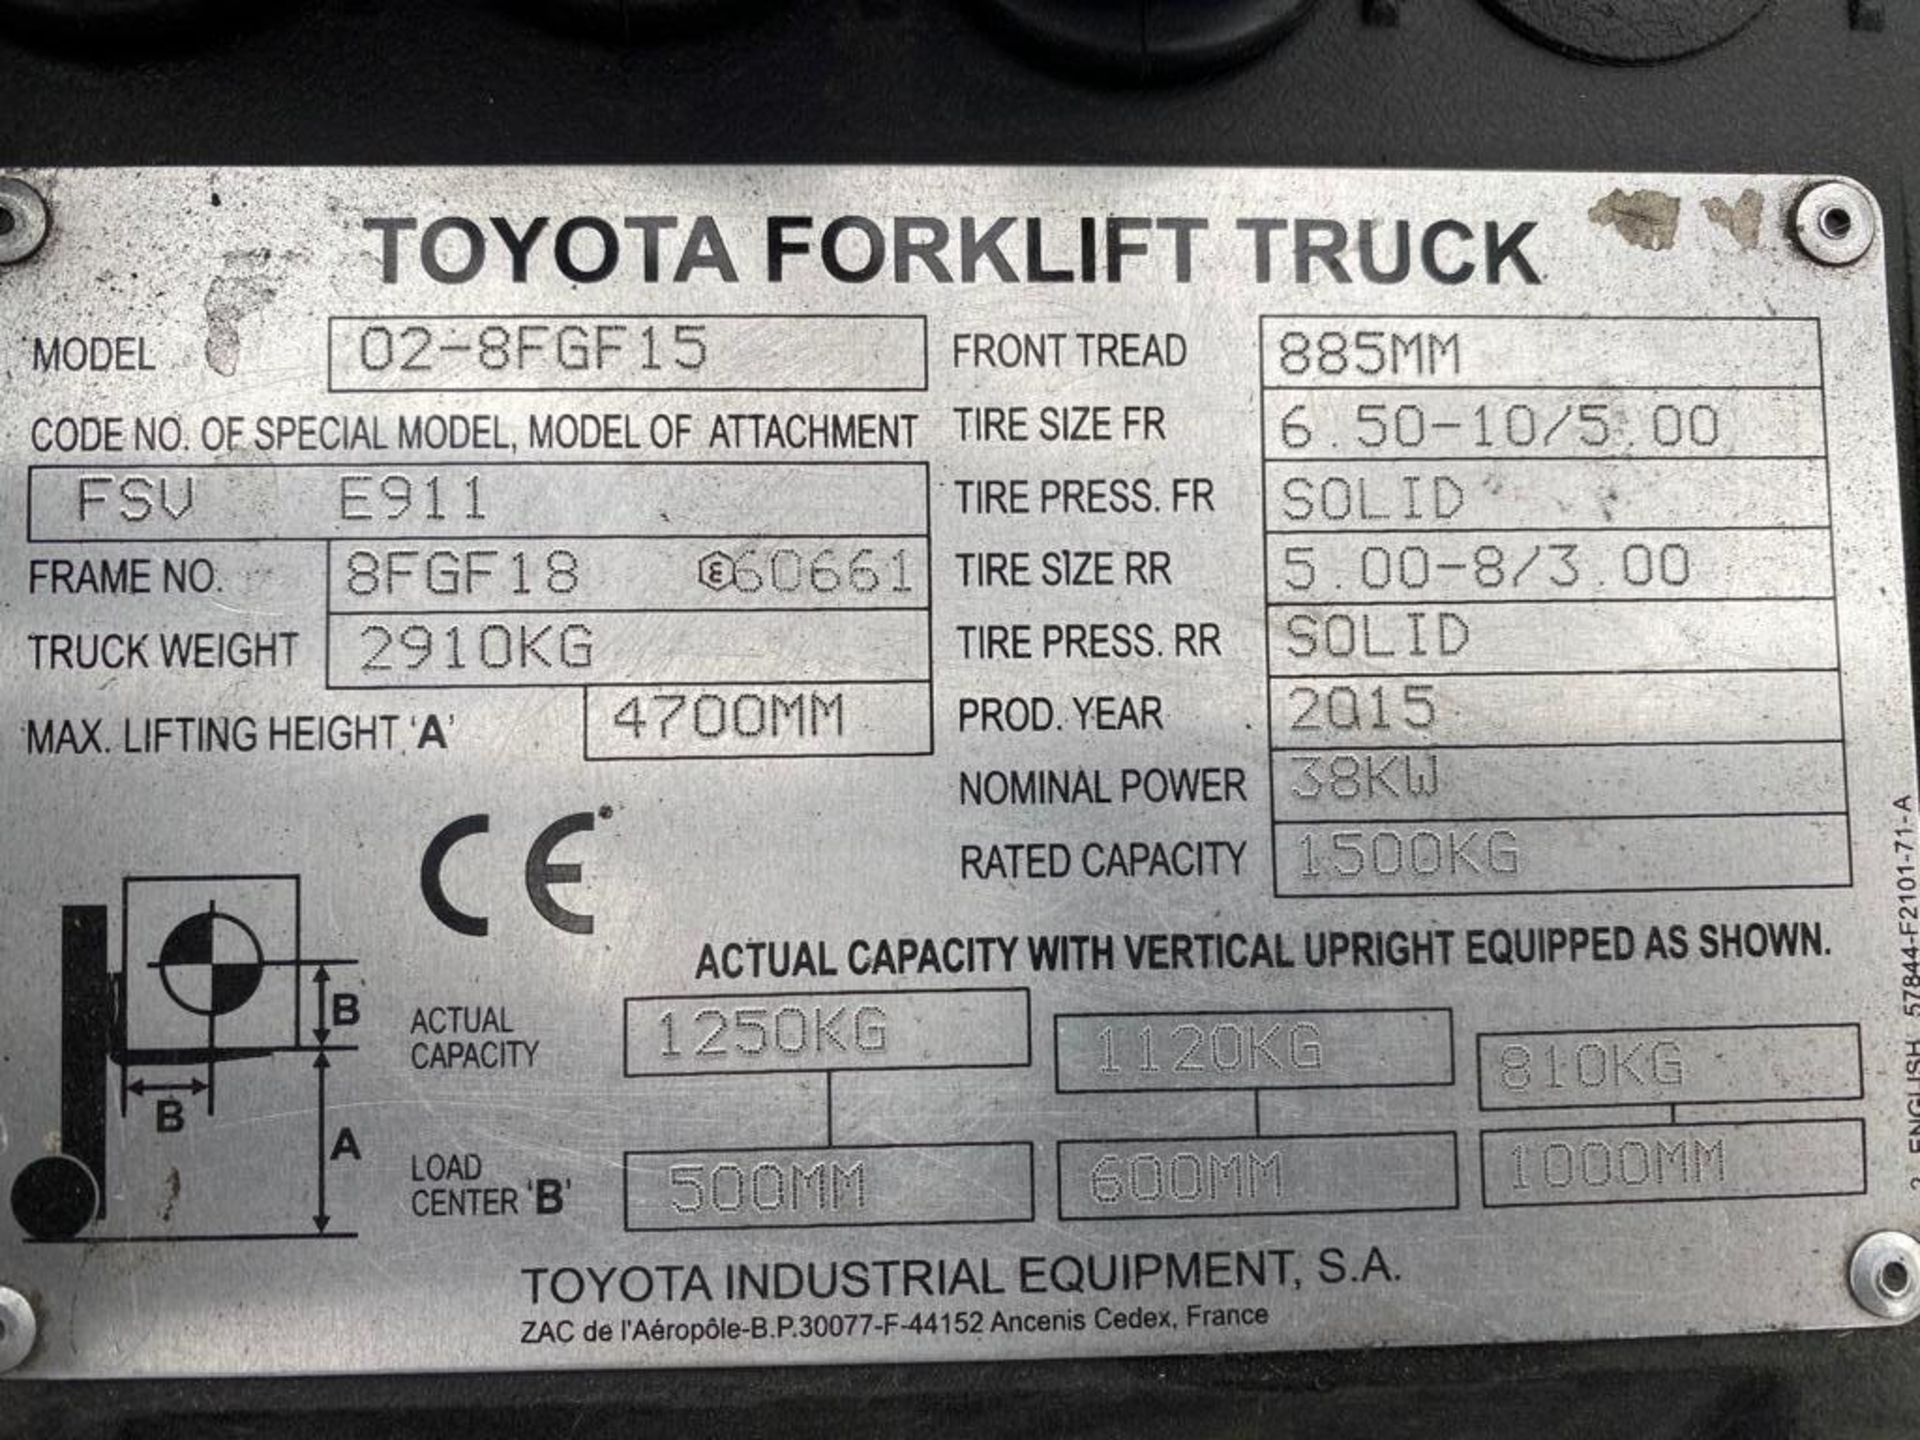 TOYOTA 02-8FGF15 Plant LPG - VIN: 8FGF18E60661 - Year: 2015 - 4.7M Triplex Forklift, Sideshift, - Image 5 of 5